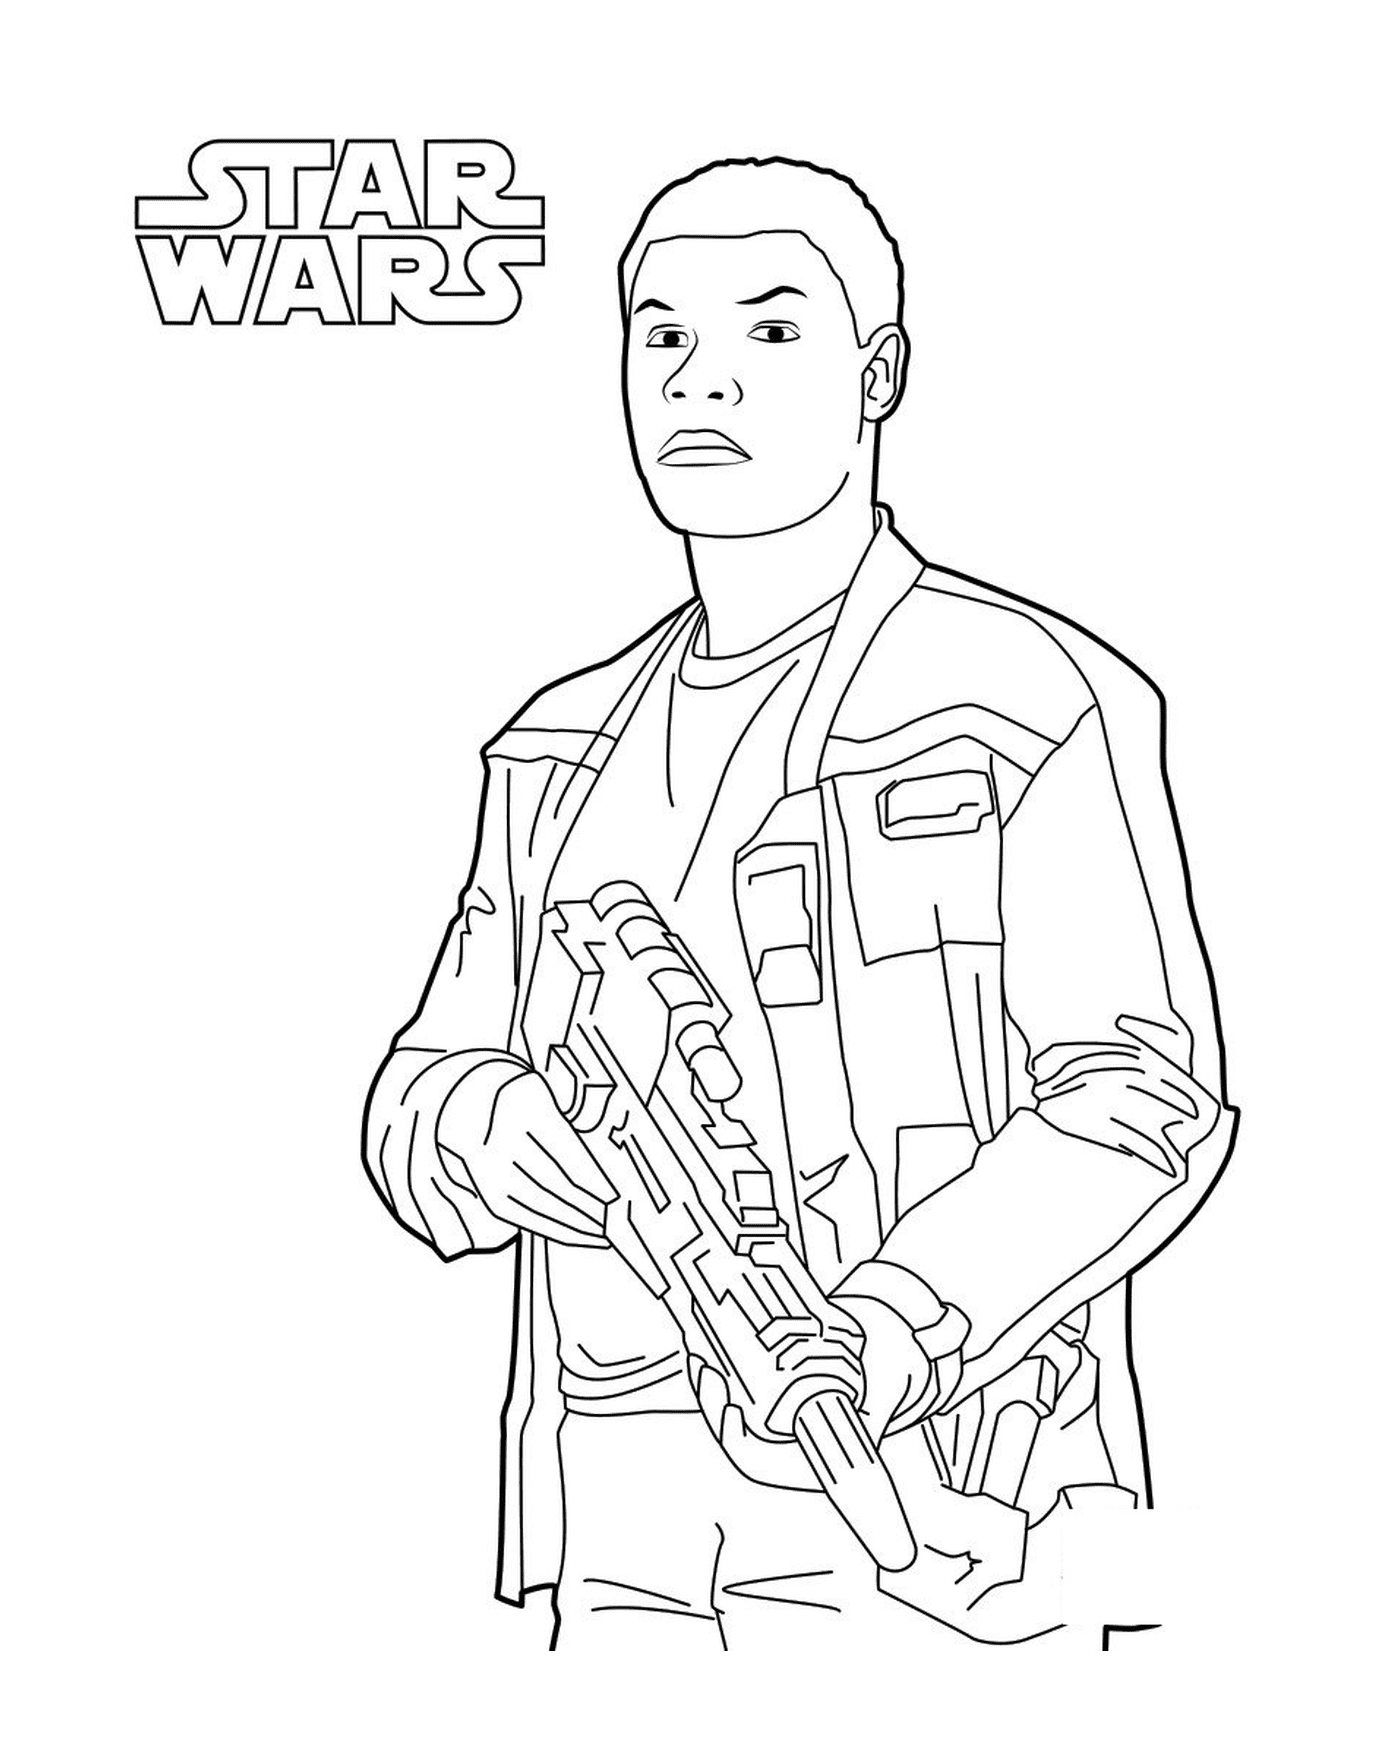  Finn with a gun in Star Wars 7 